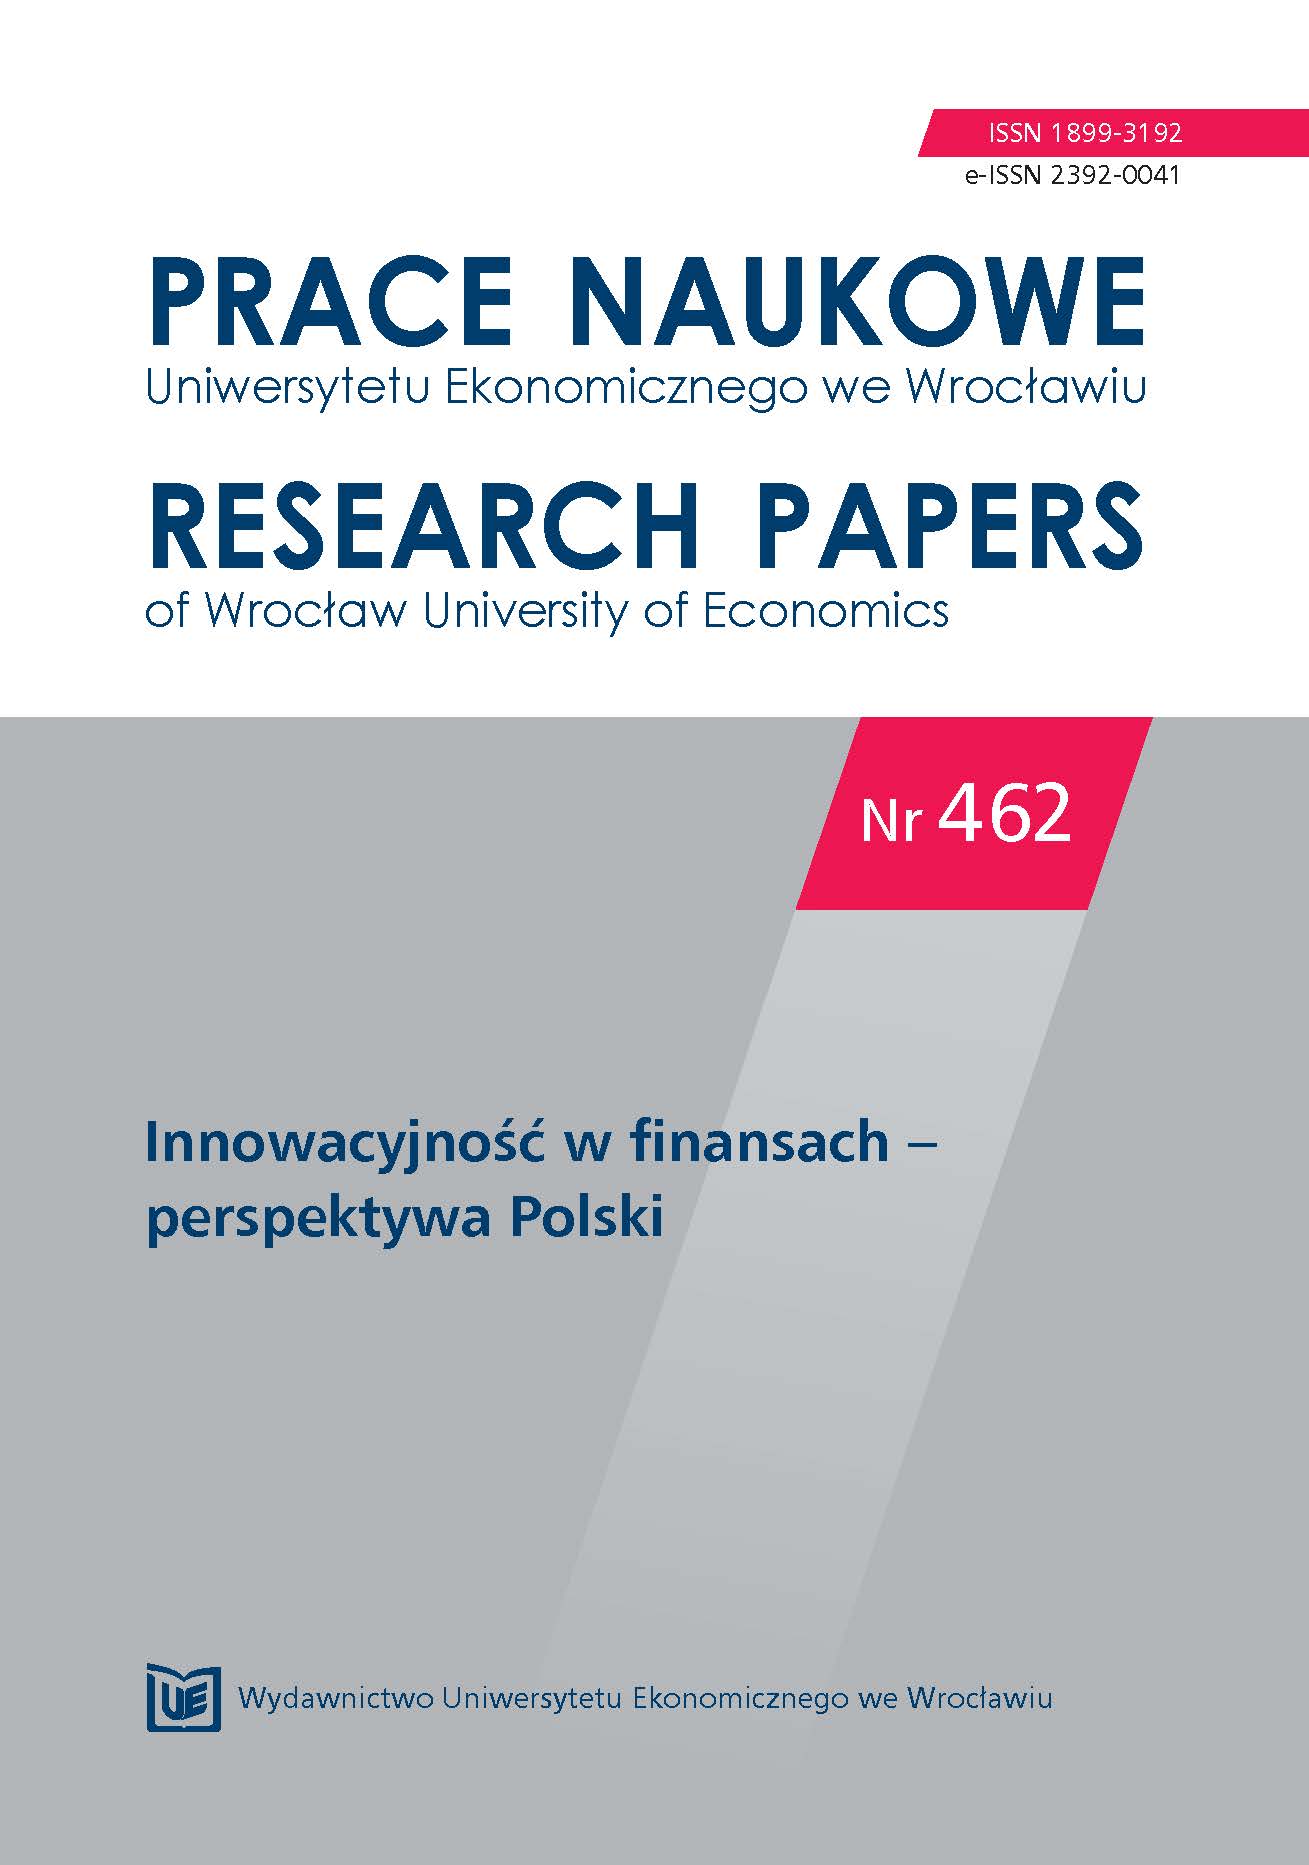 Zwiększanie innowacyjności polskiej gospodarki, czyli jak wzmocnić rodzime inwestycje venture capital